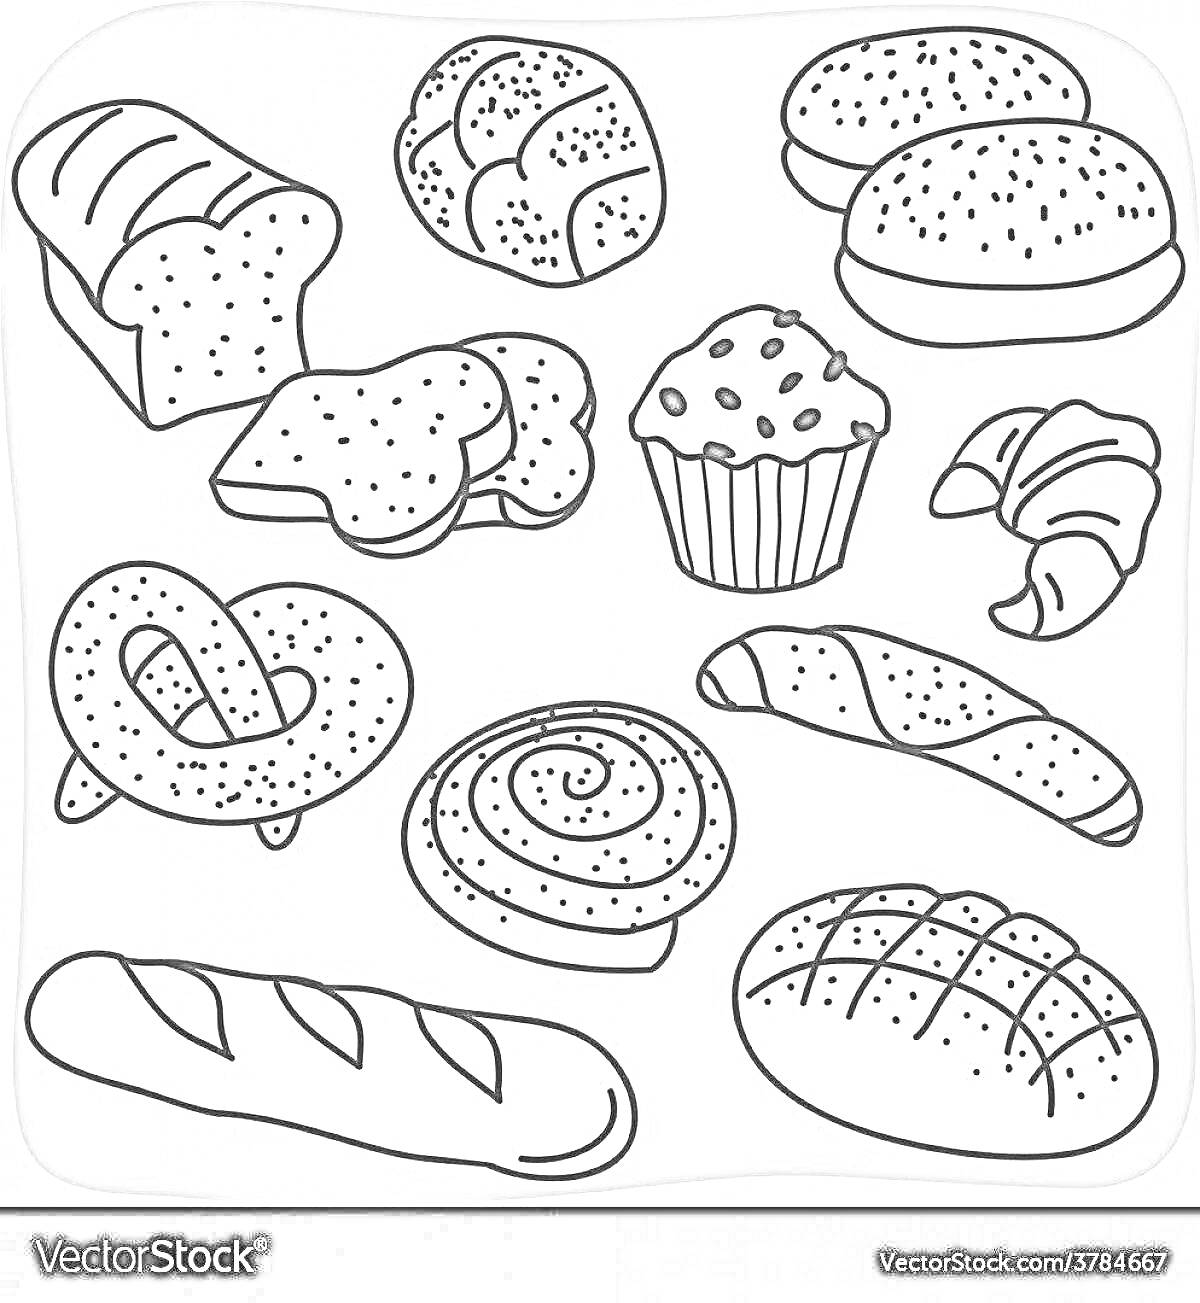 Хлеб и выпечка - булочки, нарезной батон, маффин, круассан, рогалики, бублик, багет